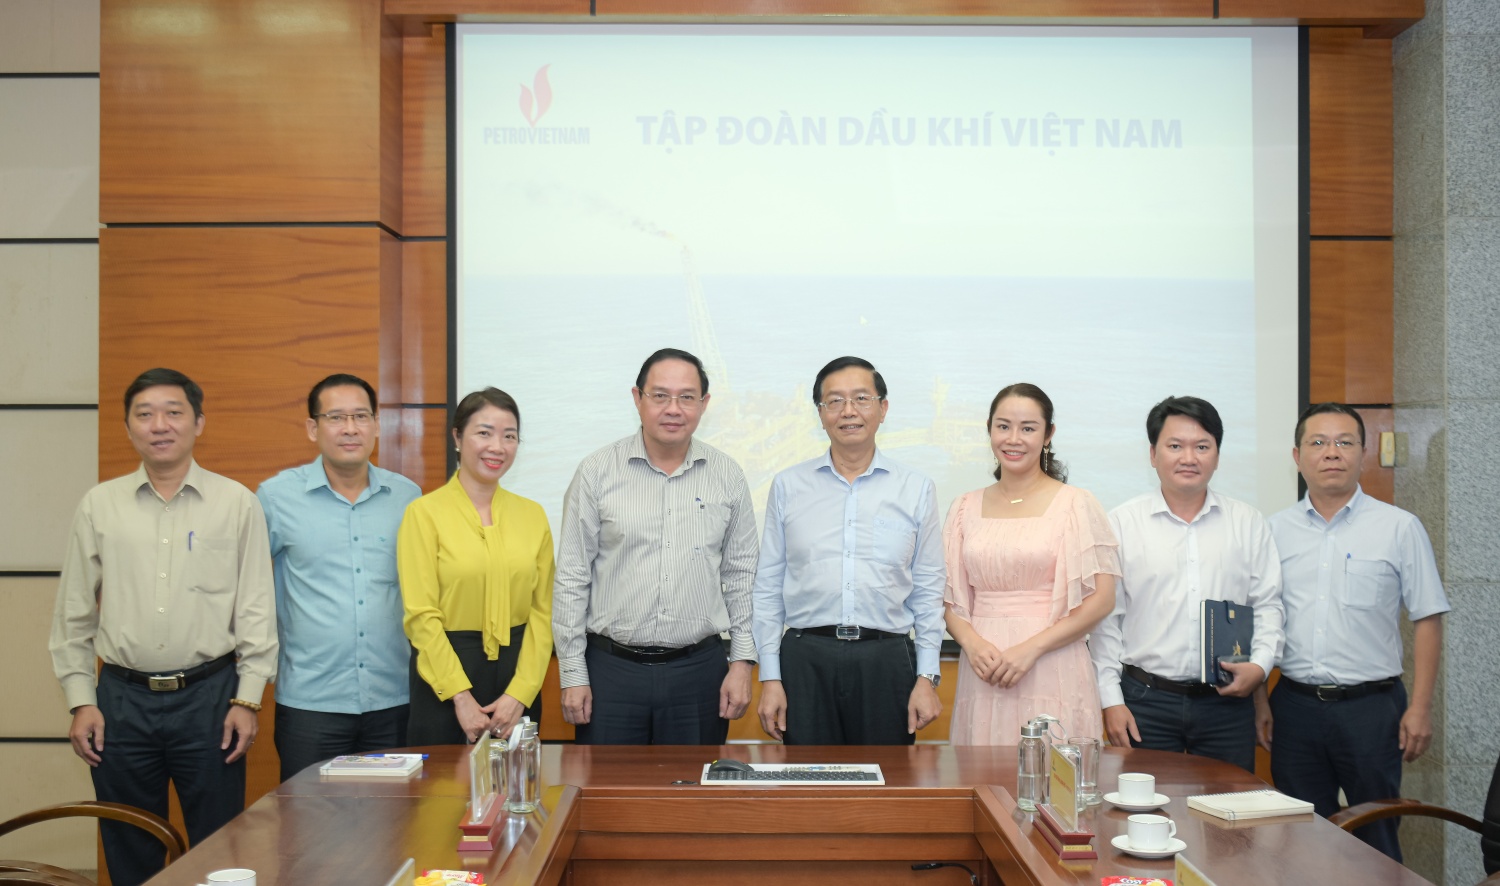 Tập đoàn Dầu khí Việt Nam trao đổi, làm việc với đoàn công tác Tập đoàn Công nghiệp Cao su Việt Nam